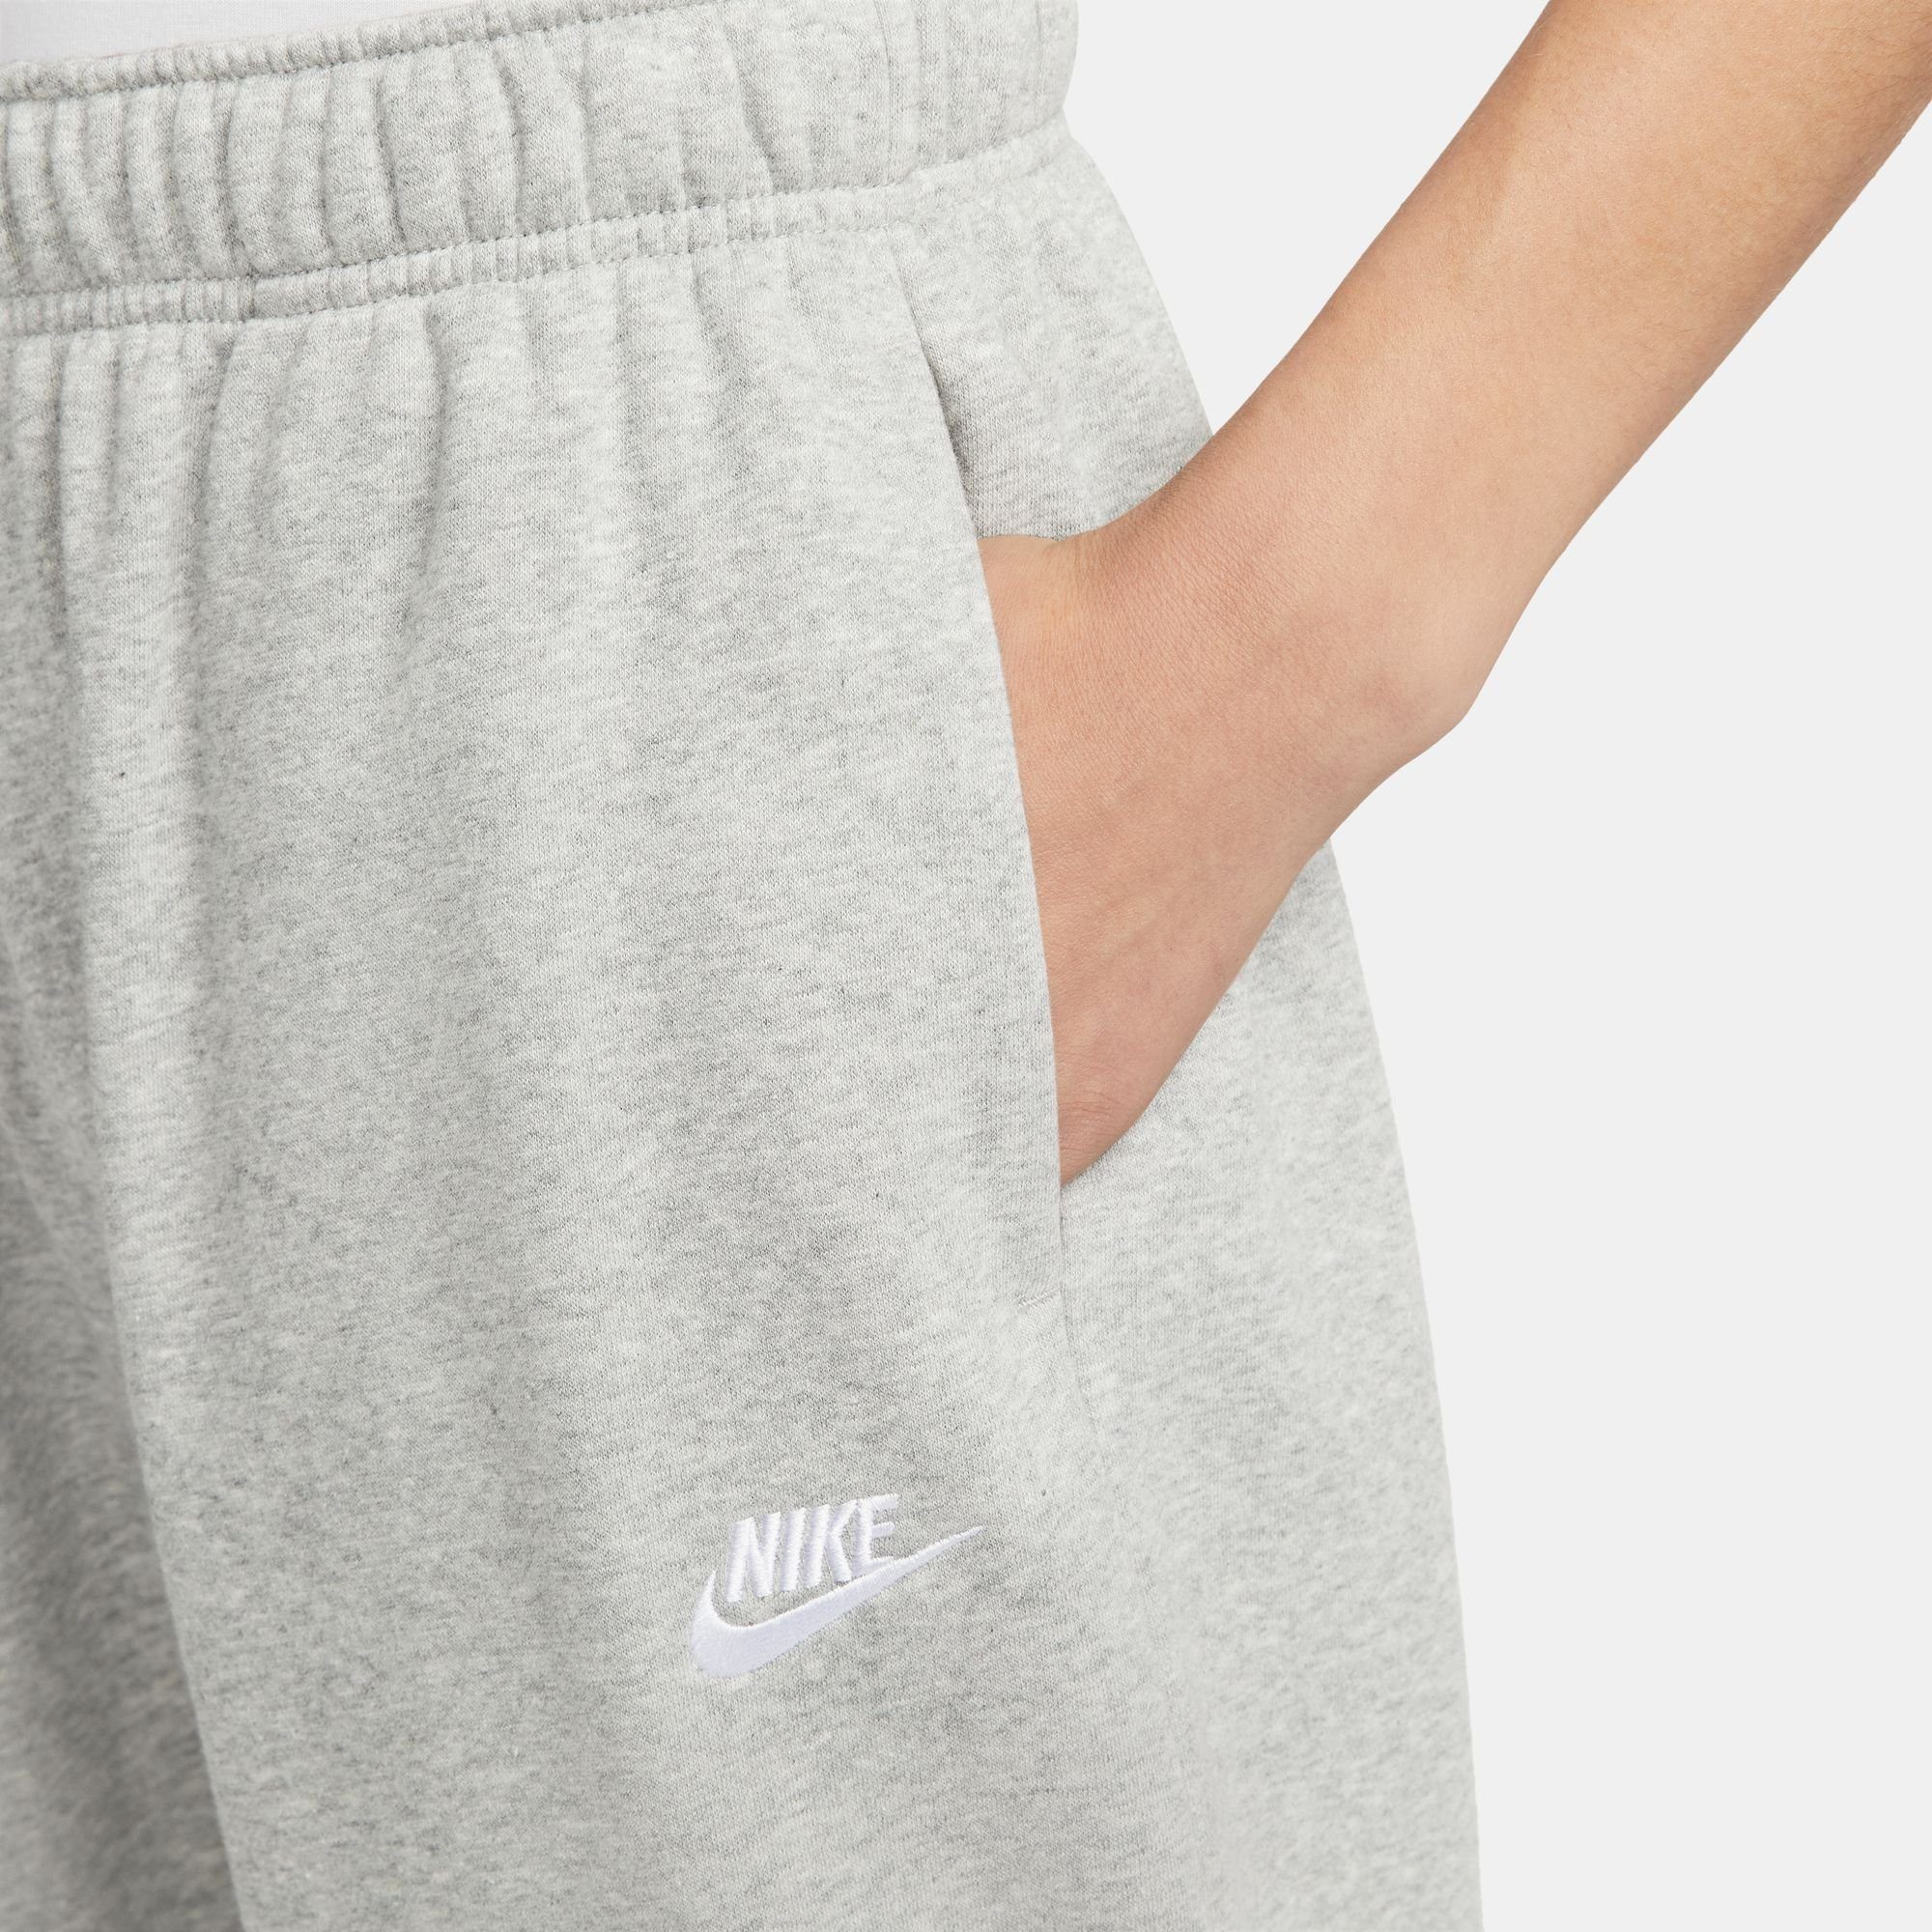 Nike Sportswear Jogginghose DK Mid-Rise Women's Pants HEATHER/WHITE GREY Club Fleece